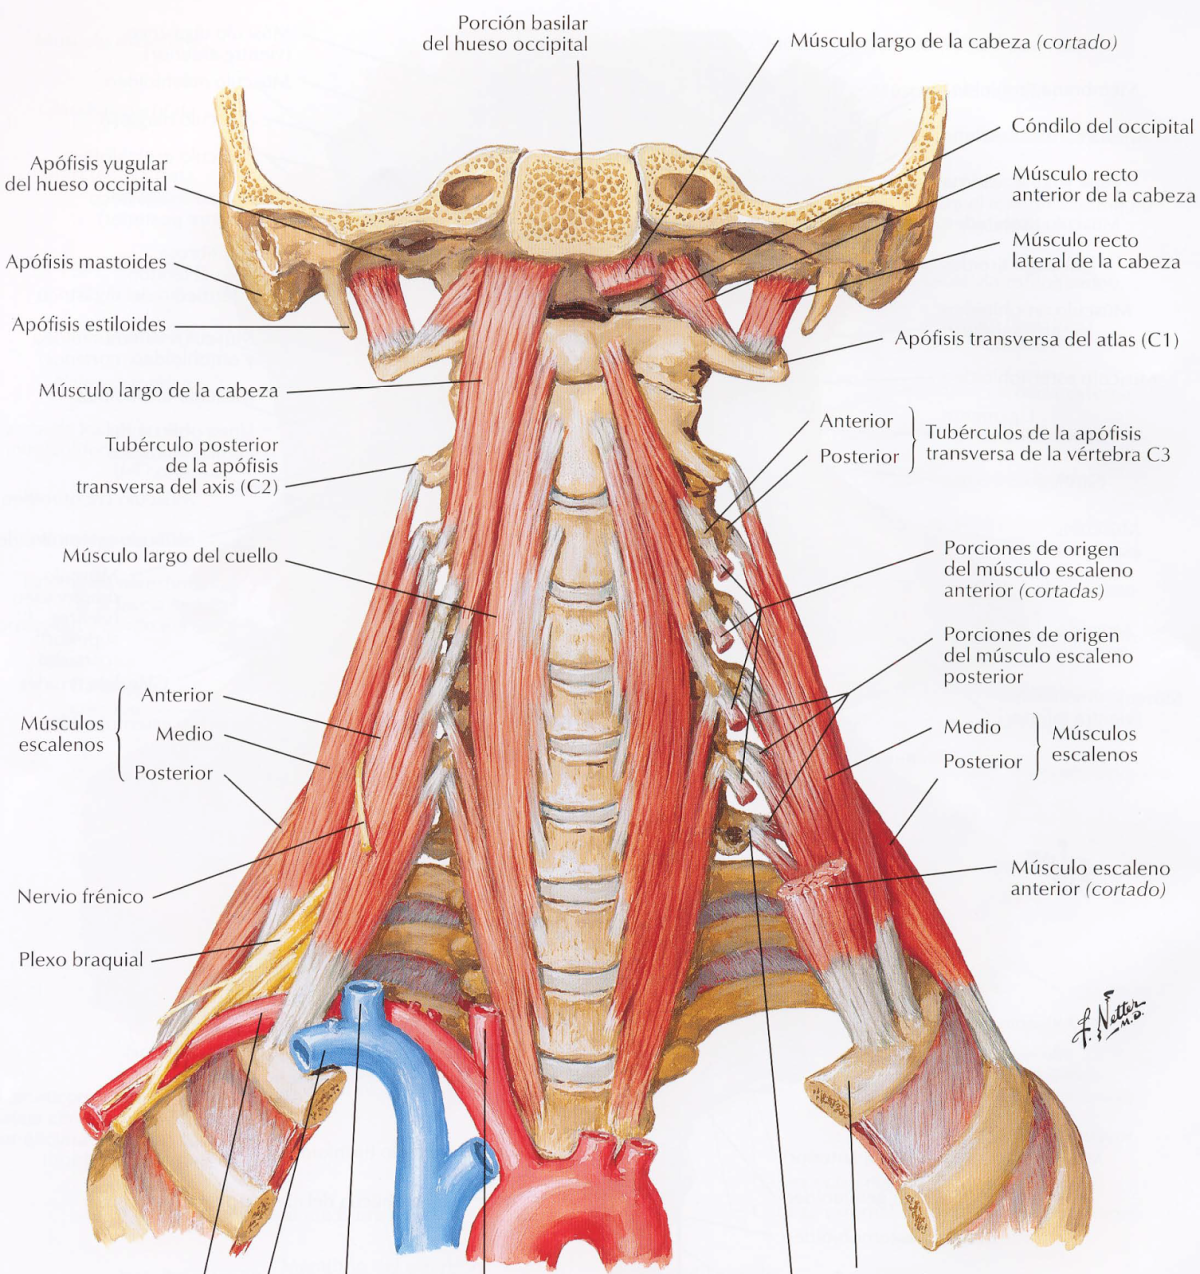 Мышцы шеи анатомия. Латеральная группа мышц шеи. Грудино подъязычная мышца шеи. Scalenus anterior мышца. Предпозвоночные мышцы шеи анатомия.